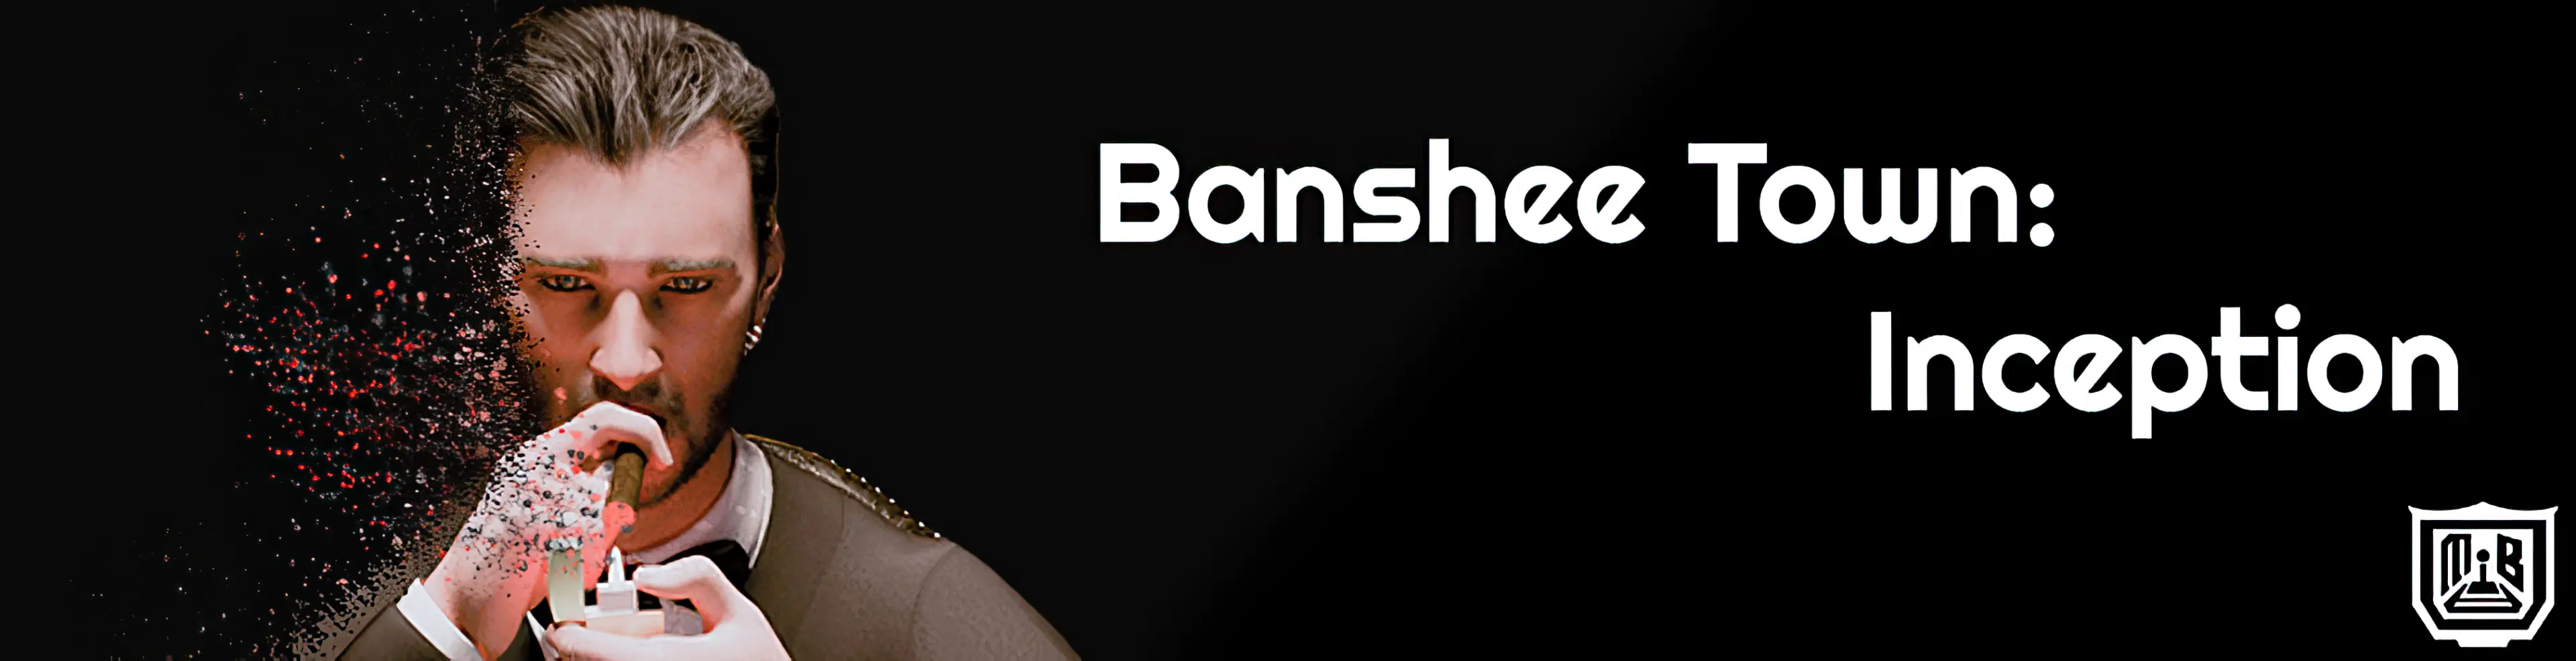 Banshee Town - Inception main image